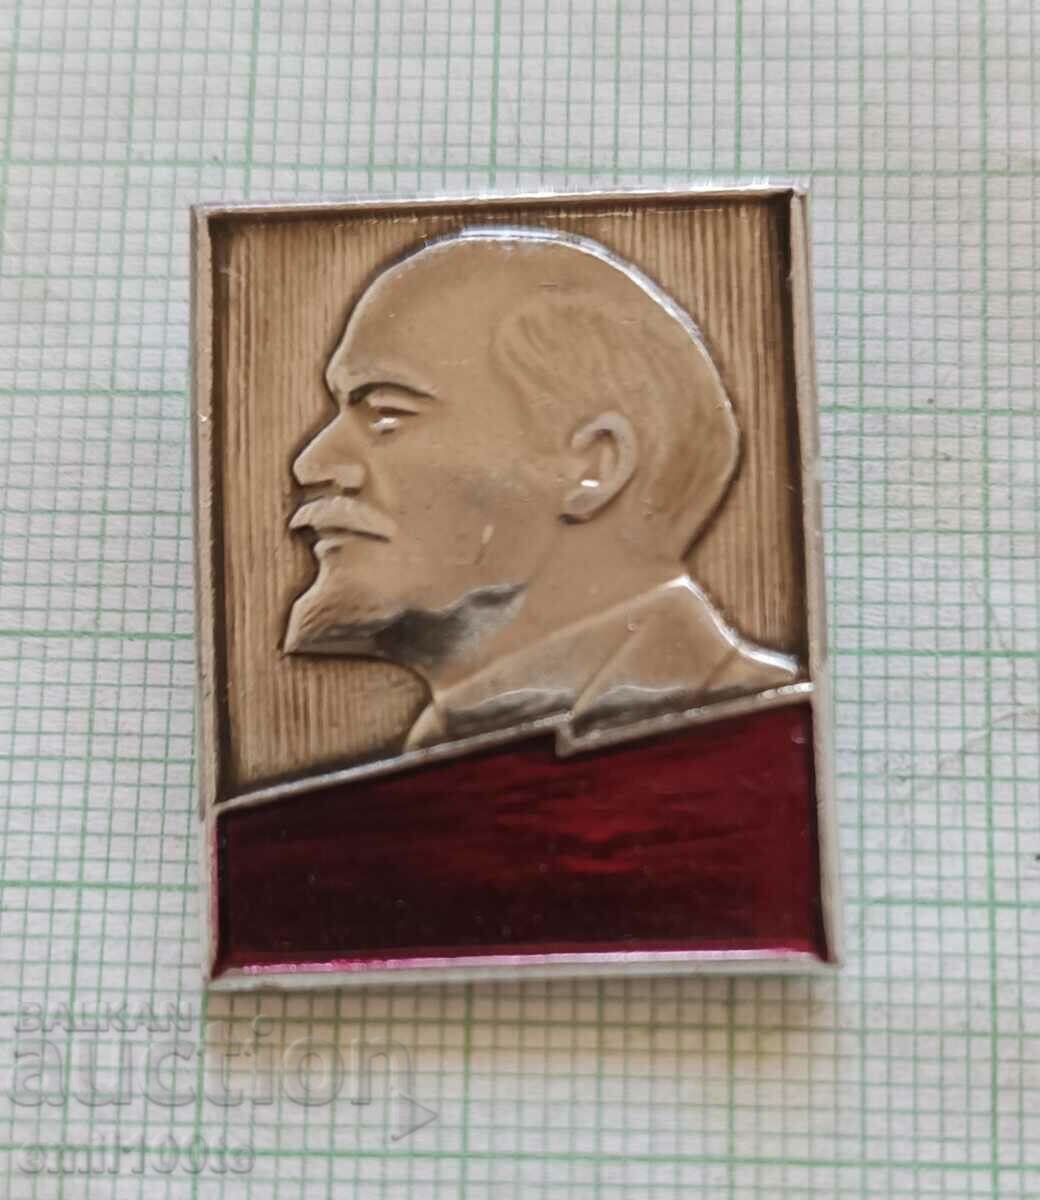 Badge - Lenin